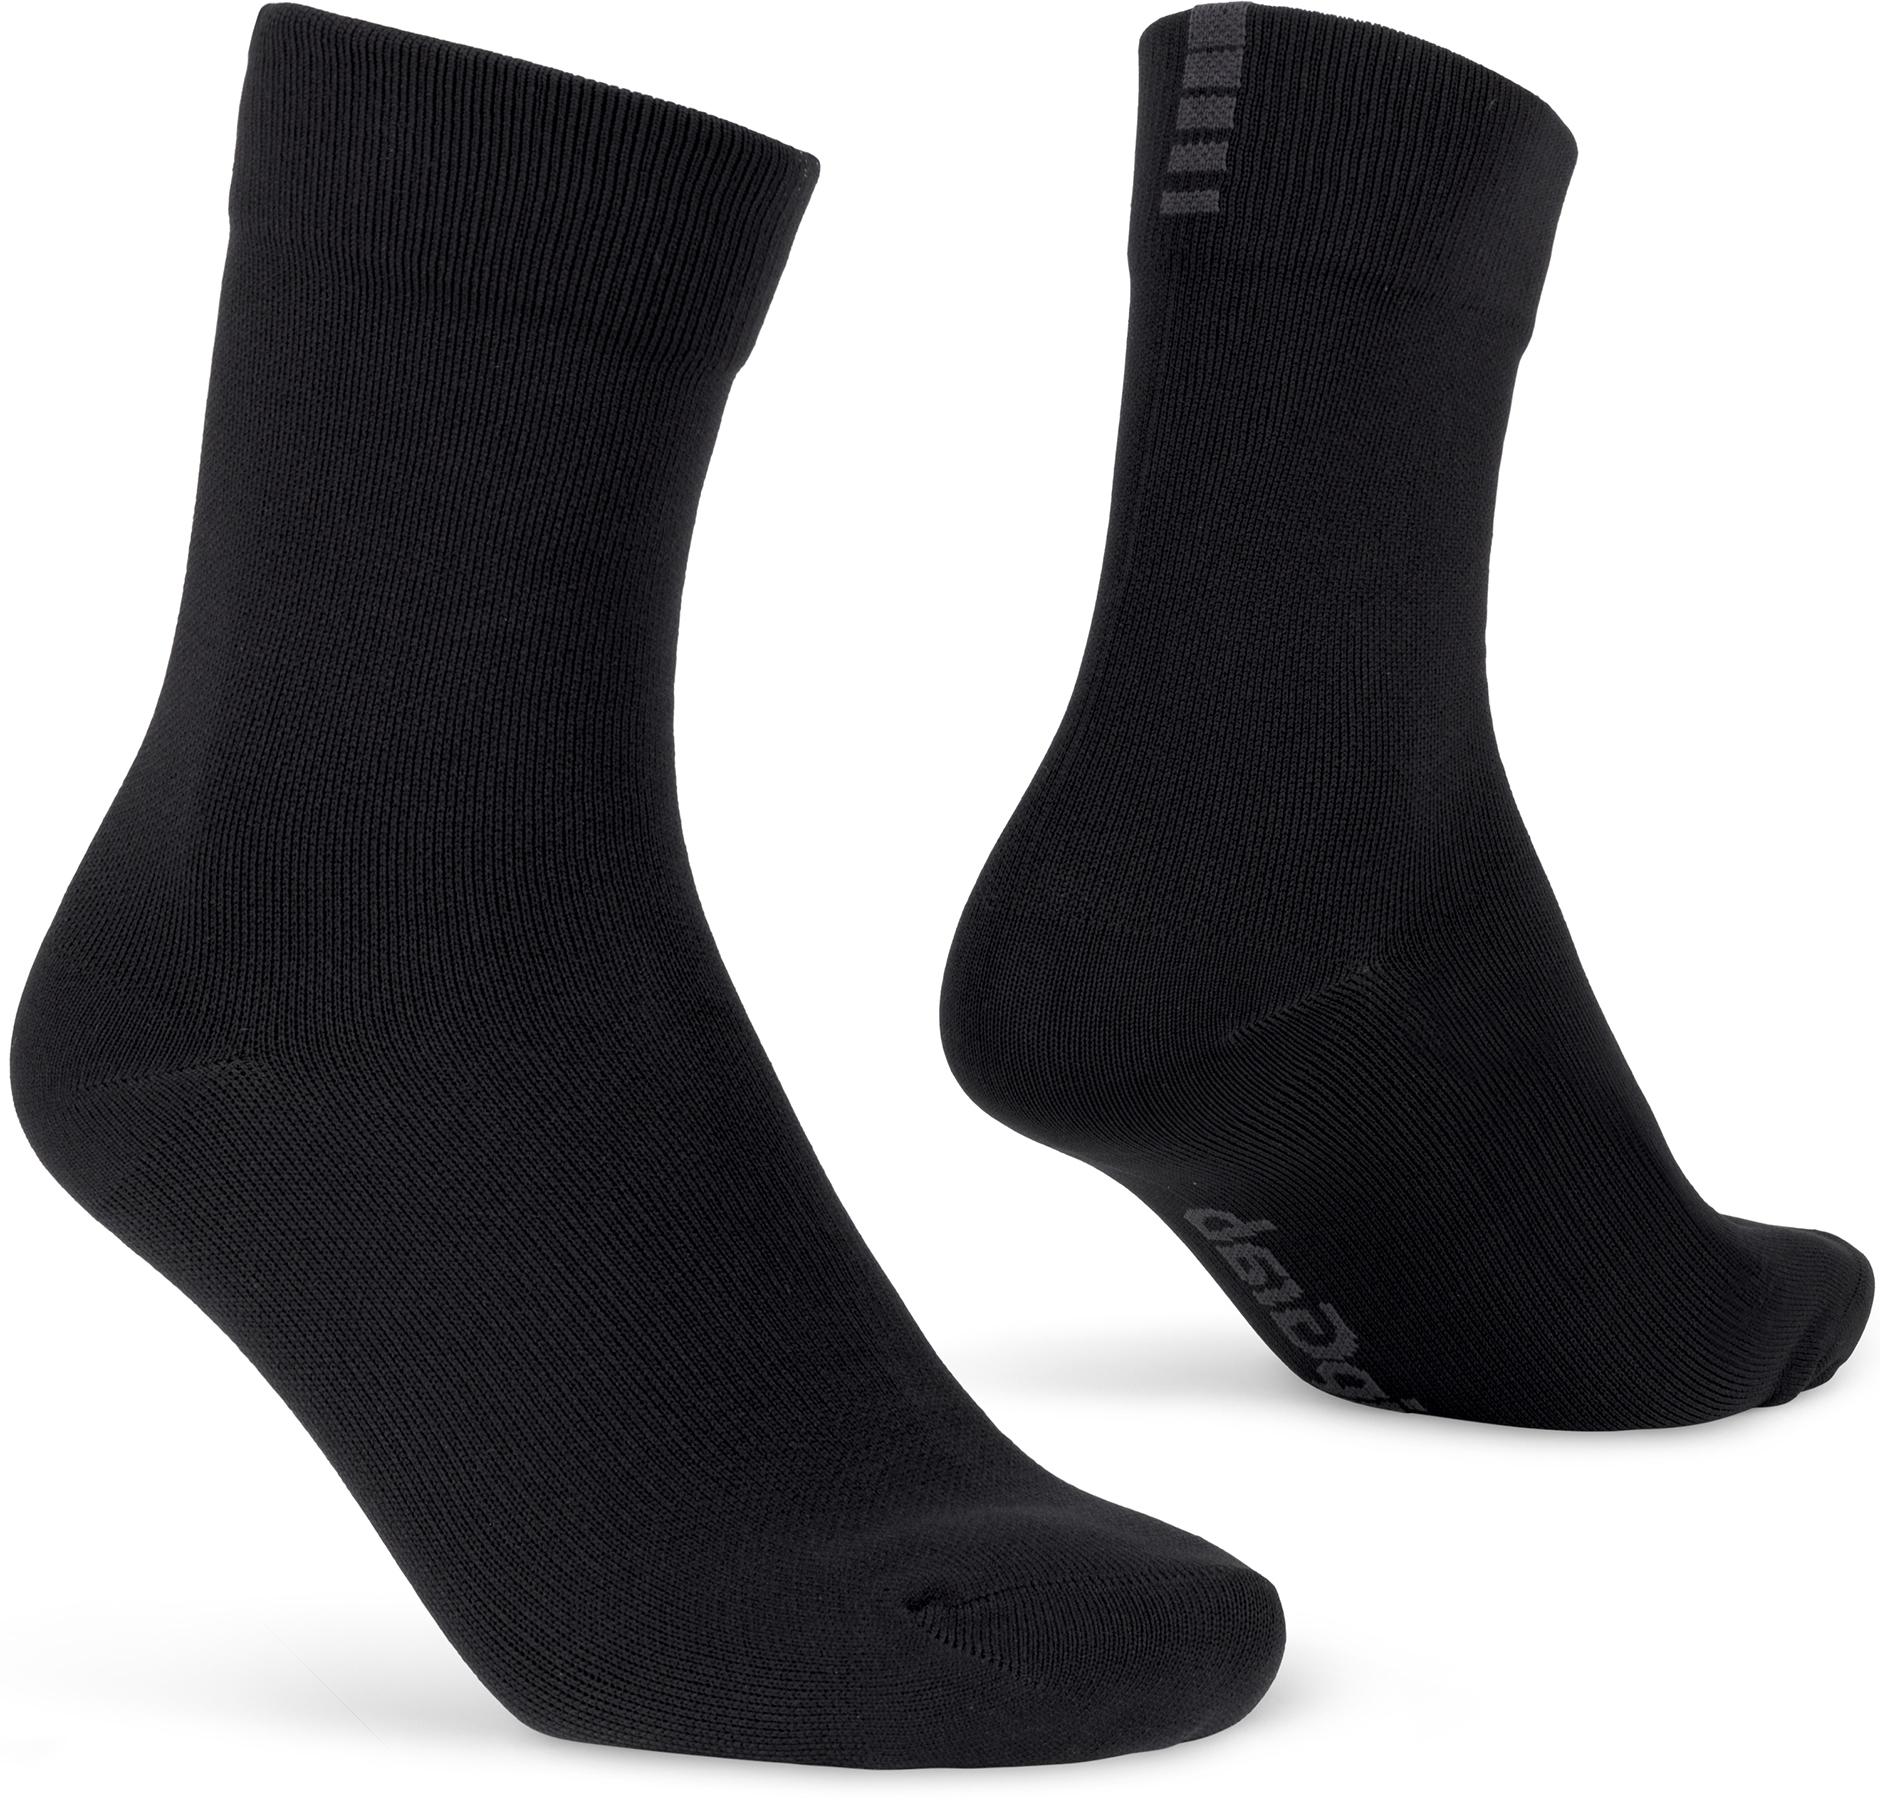 Gripgrab Lightweight Waterproof Sock - Black